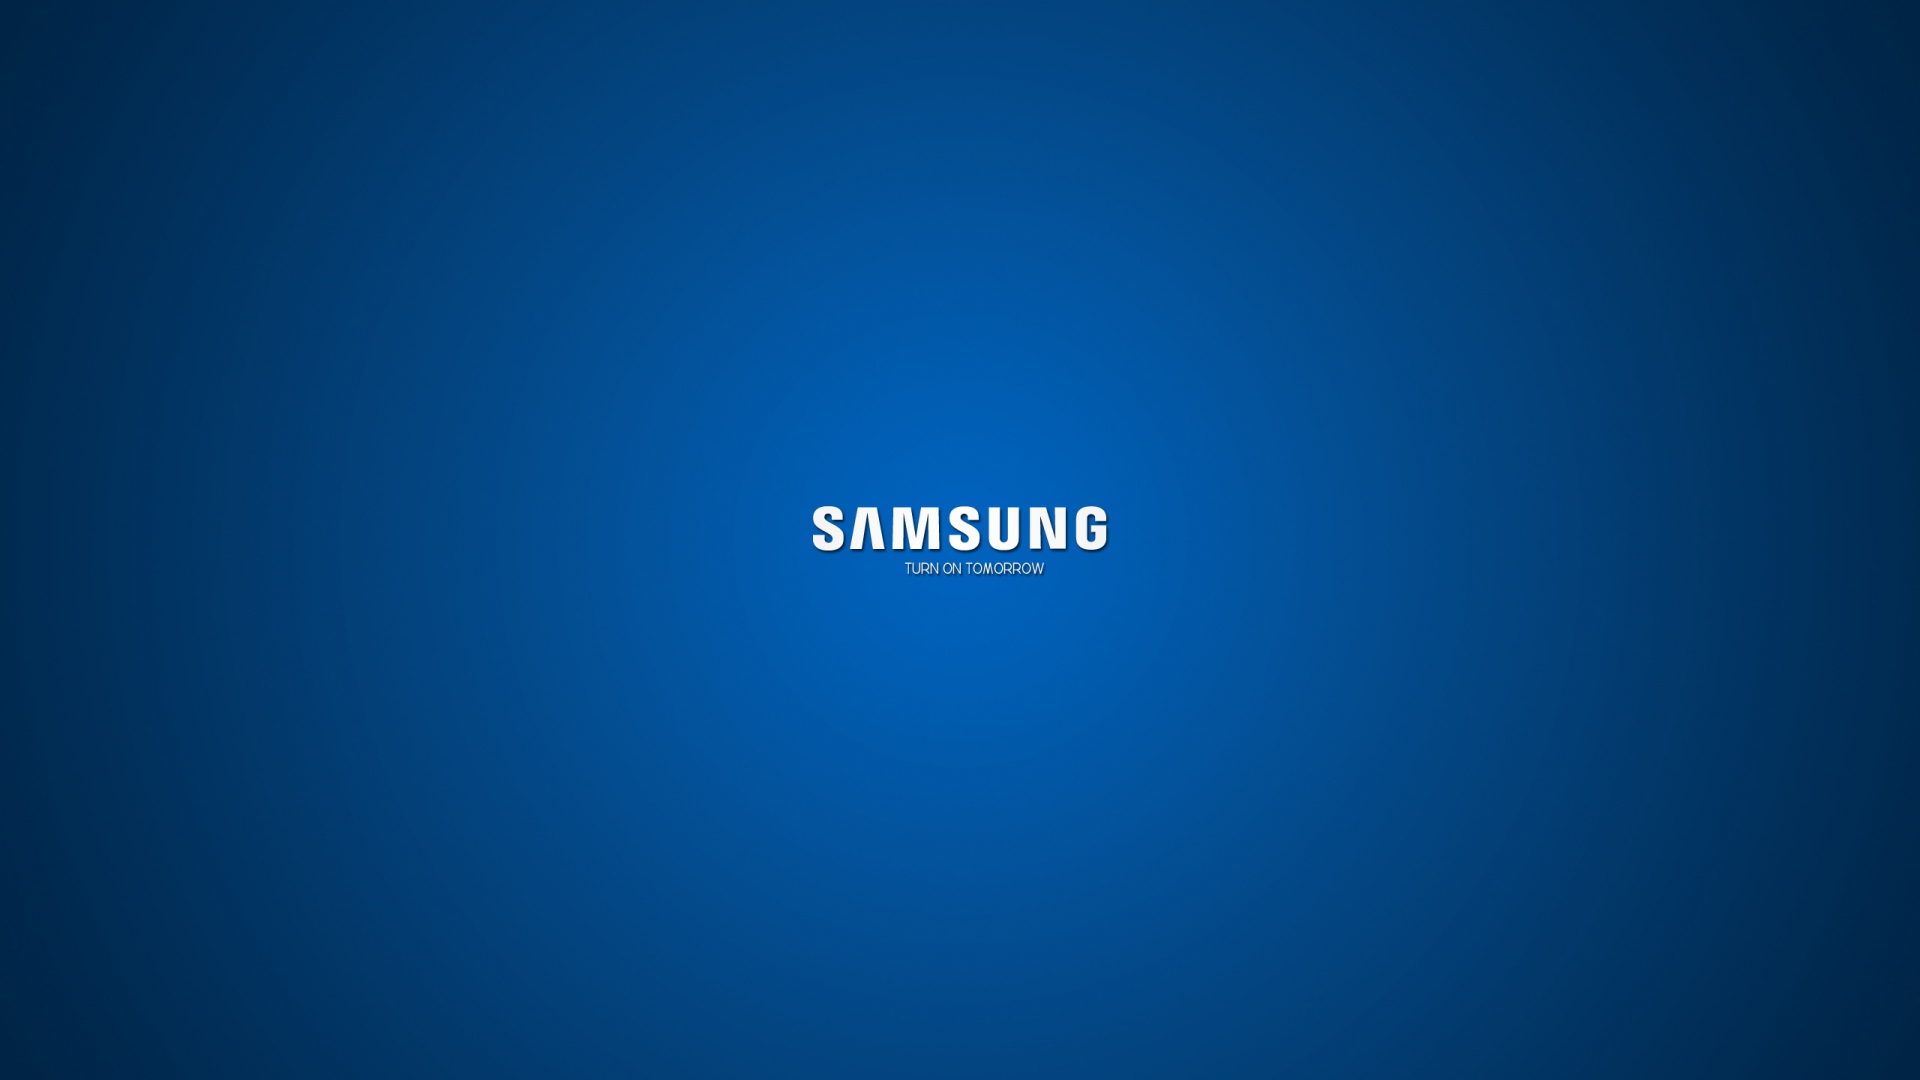 Samsung Wallpaper 1080p - WallpaperSafari